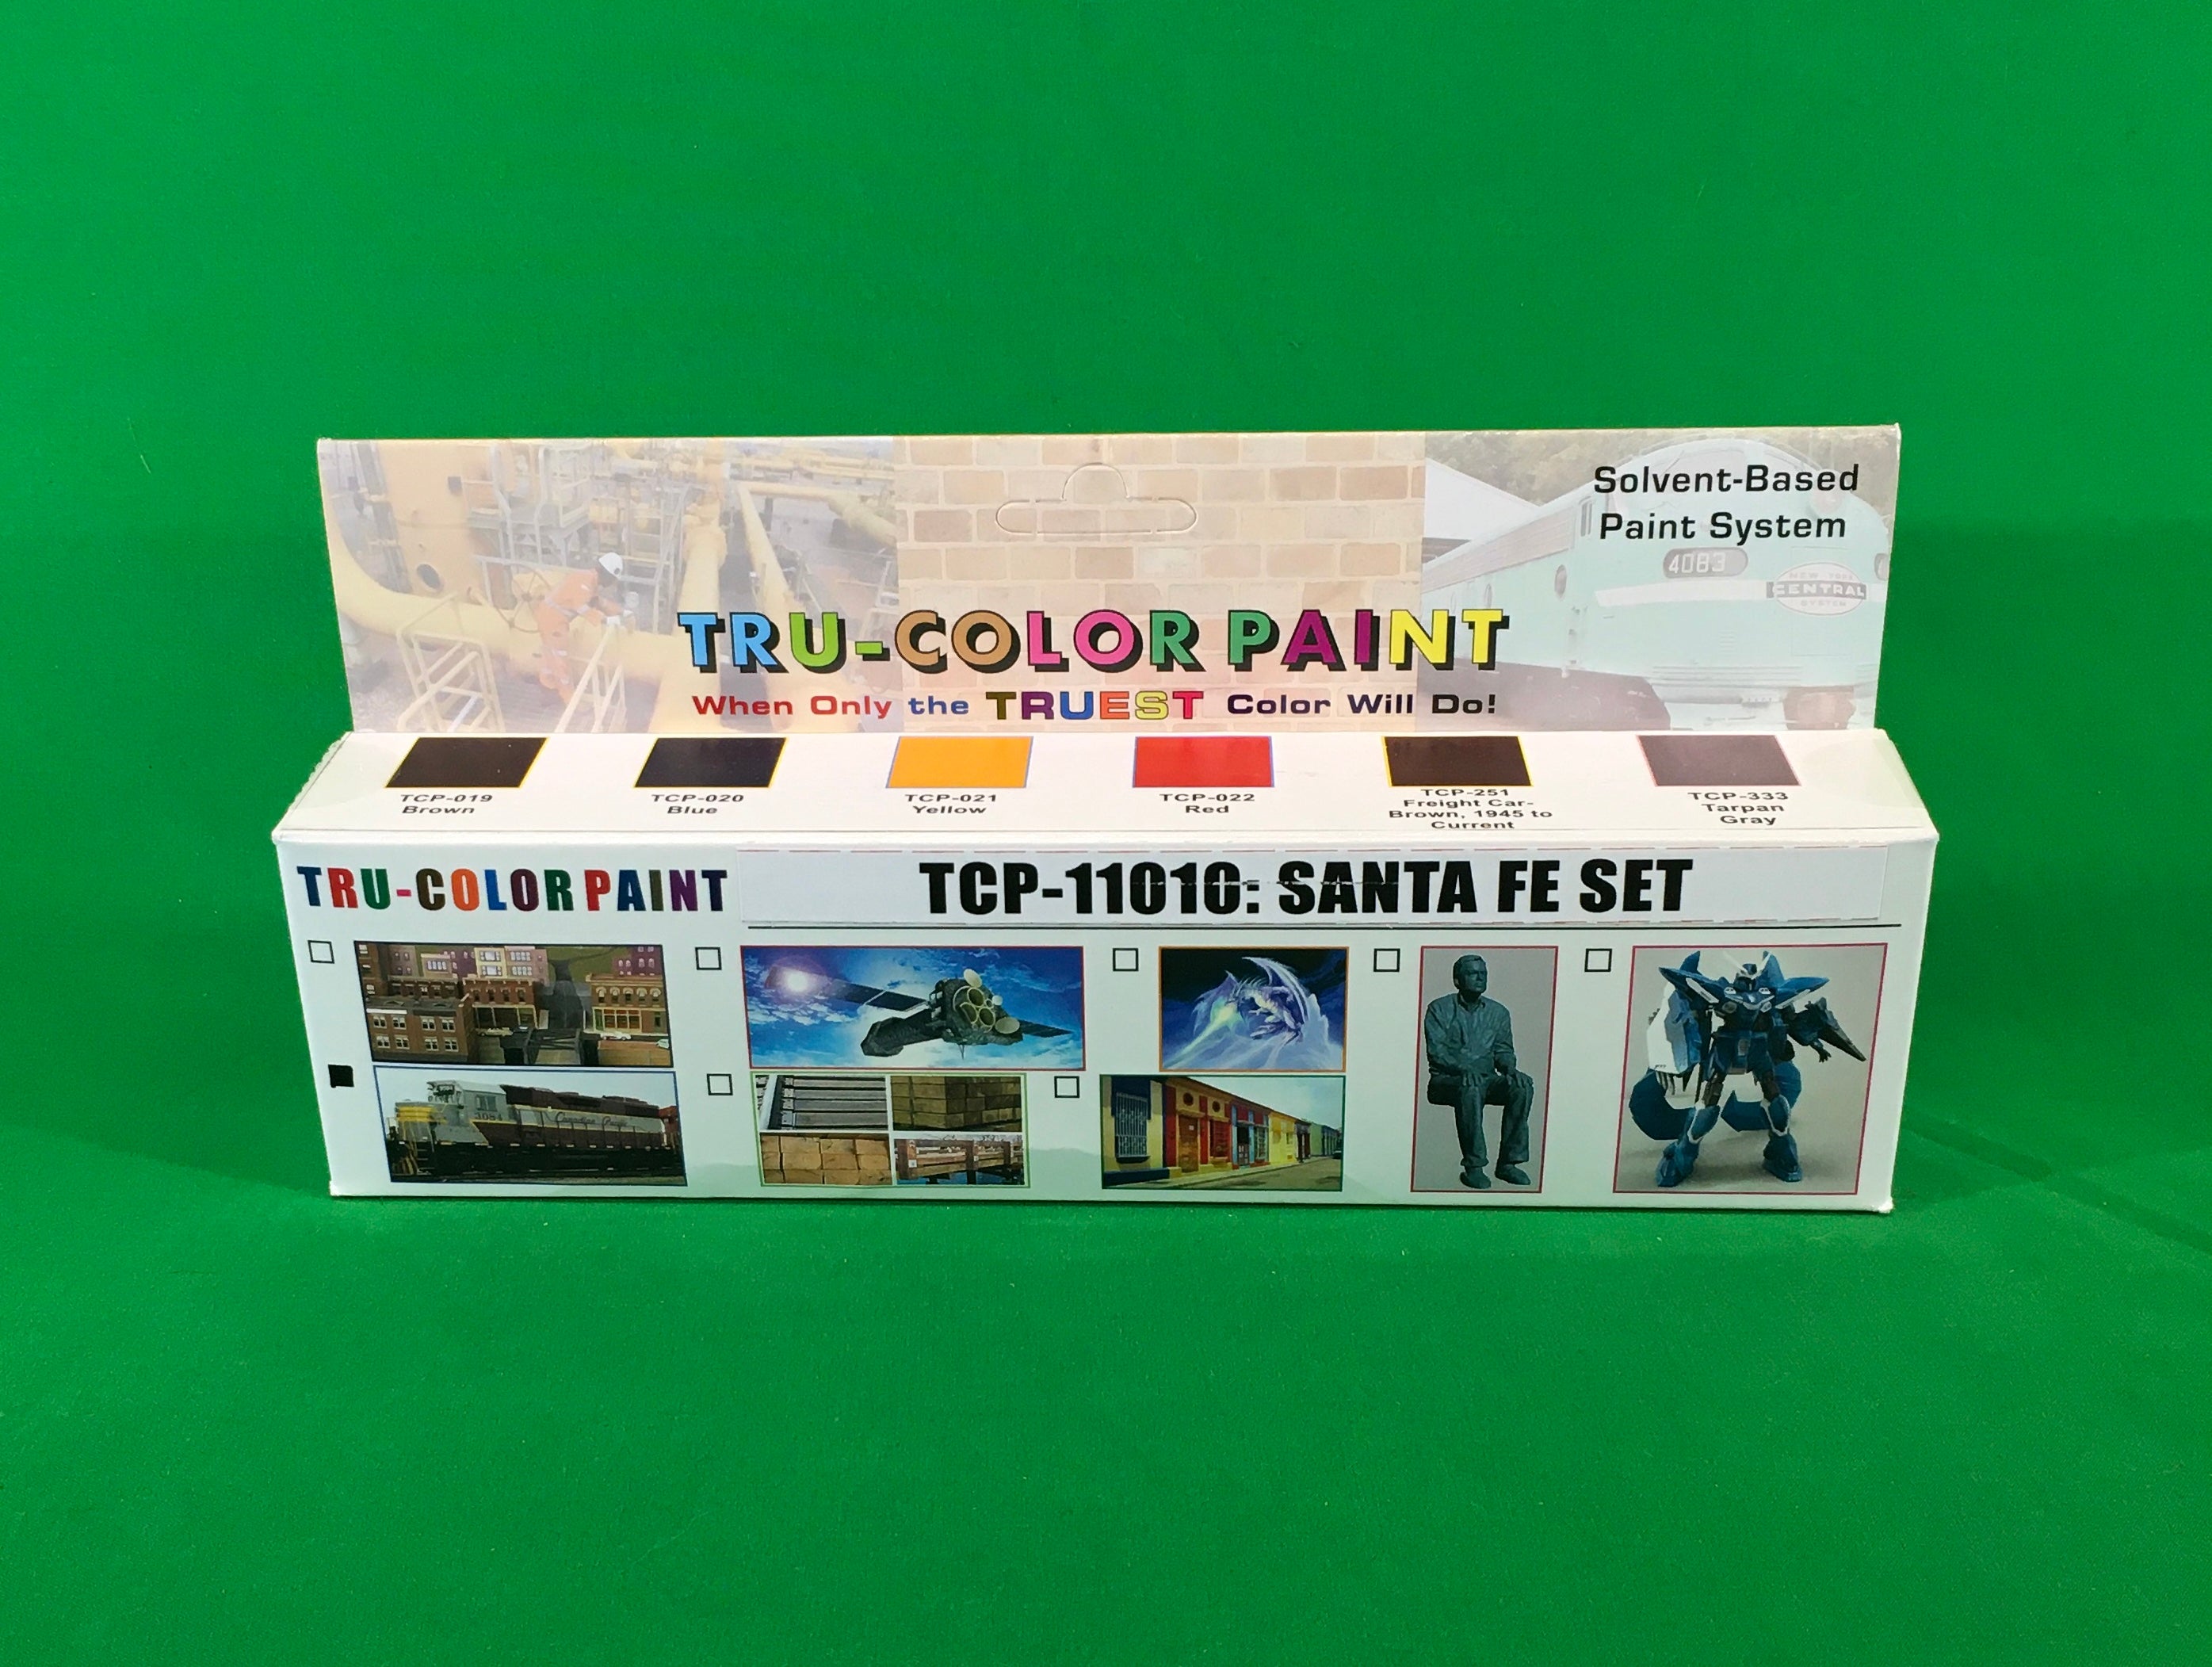 Tru-Color Paint - TCP-11010 - Santa Fe Set #1 (Solvent-Based Paint)